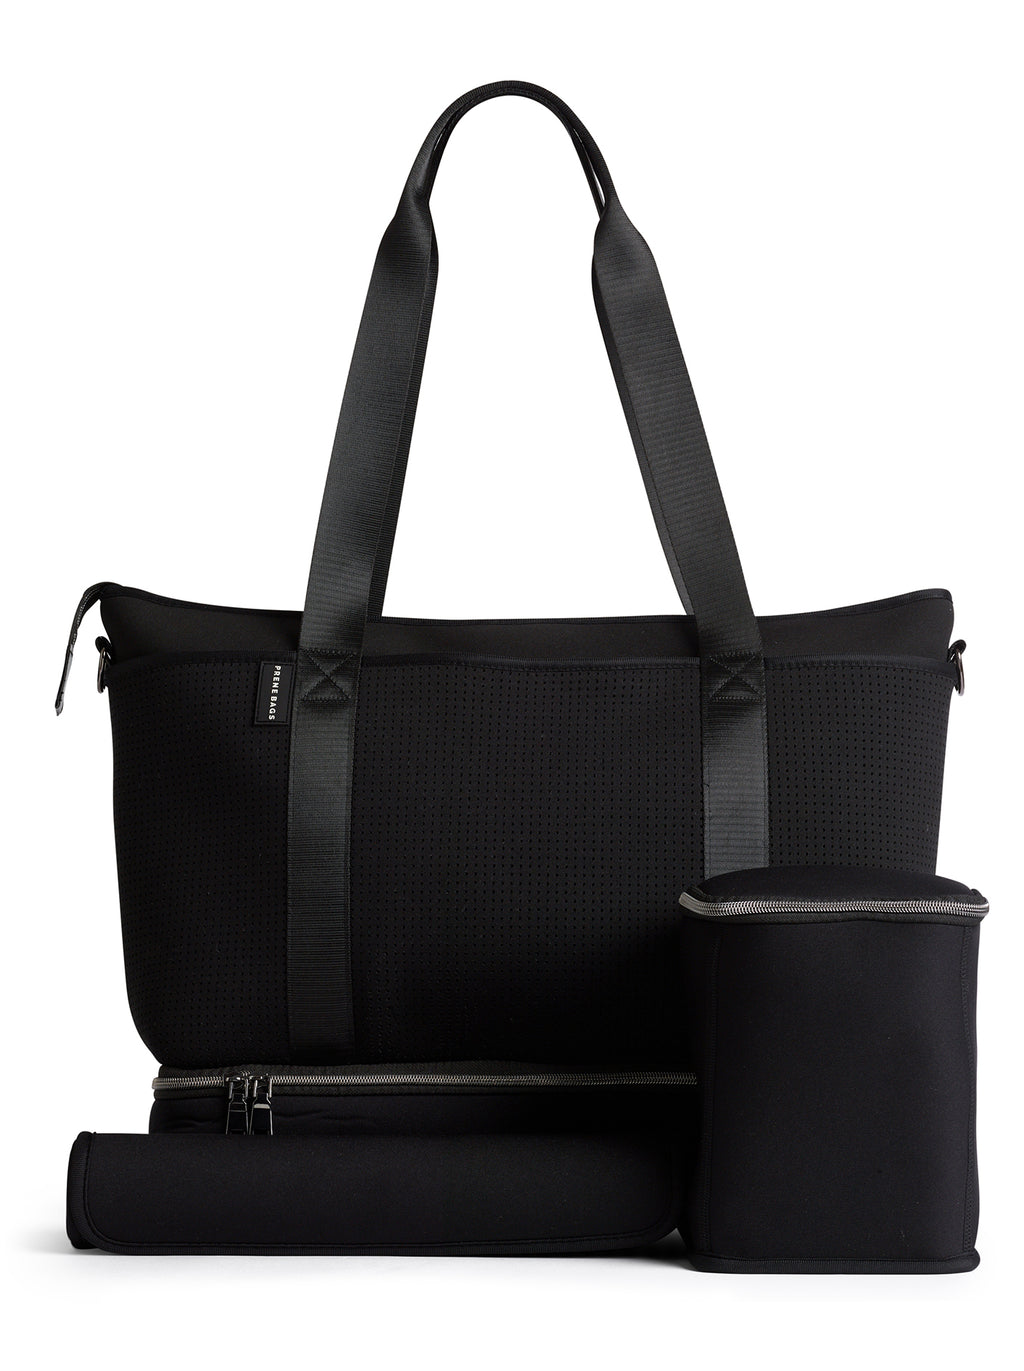 **PRE-ORDER** The Saturday Bag (BLACK) Neoprene Tote / Baby / Travel Bag